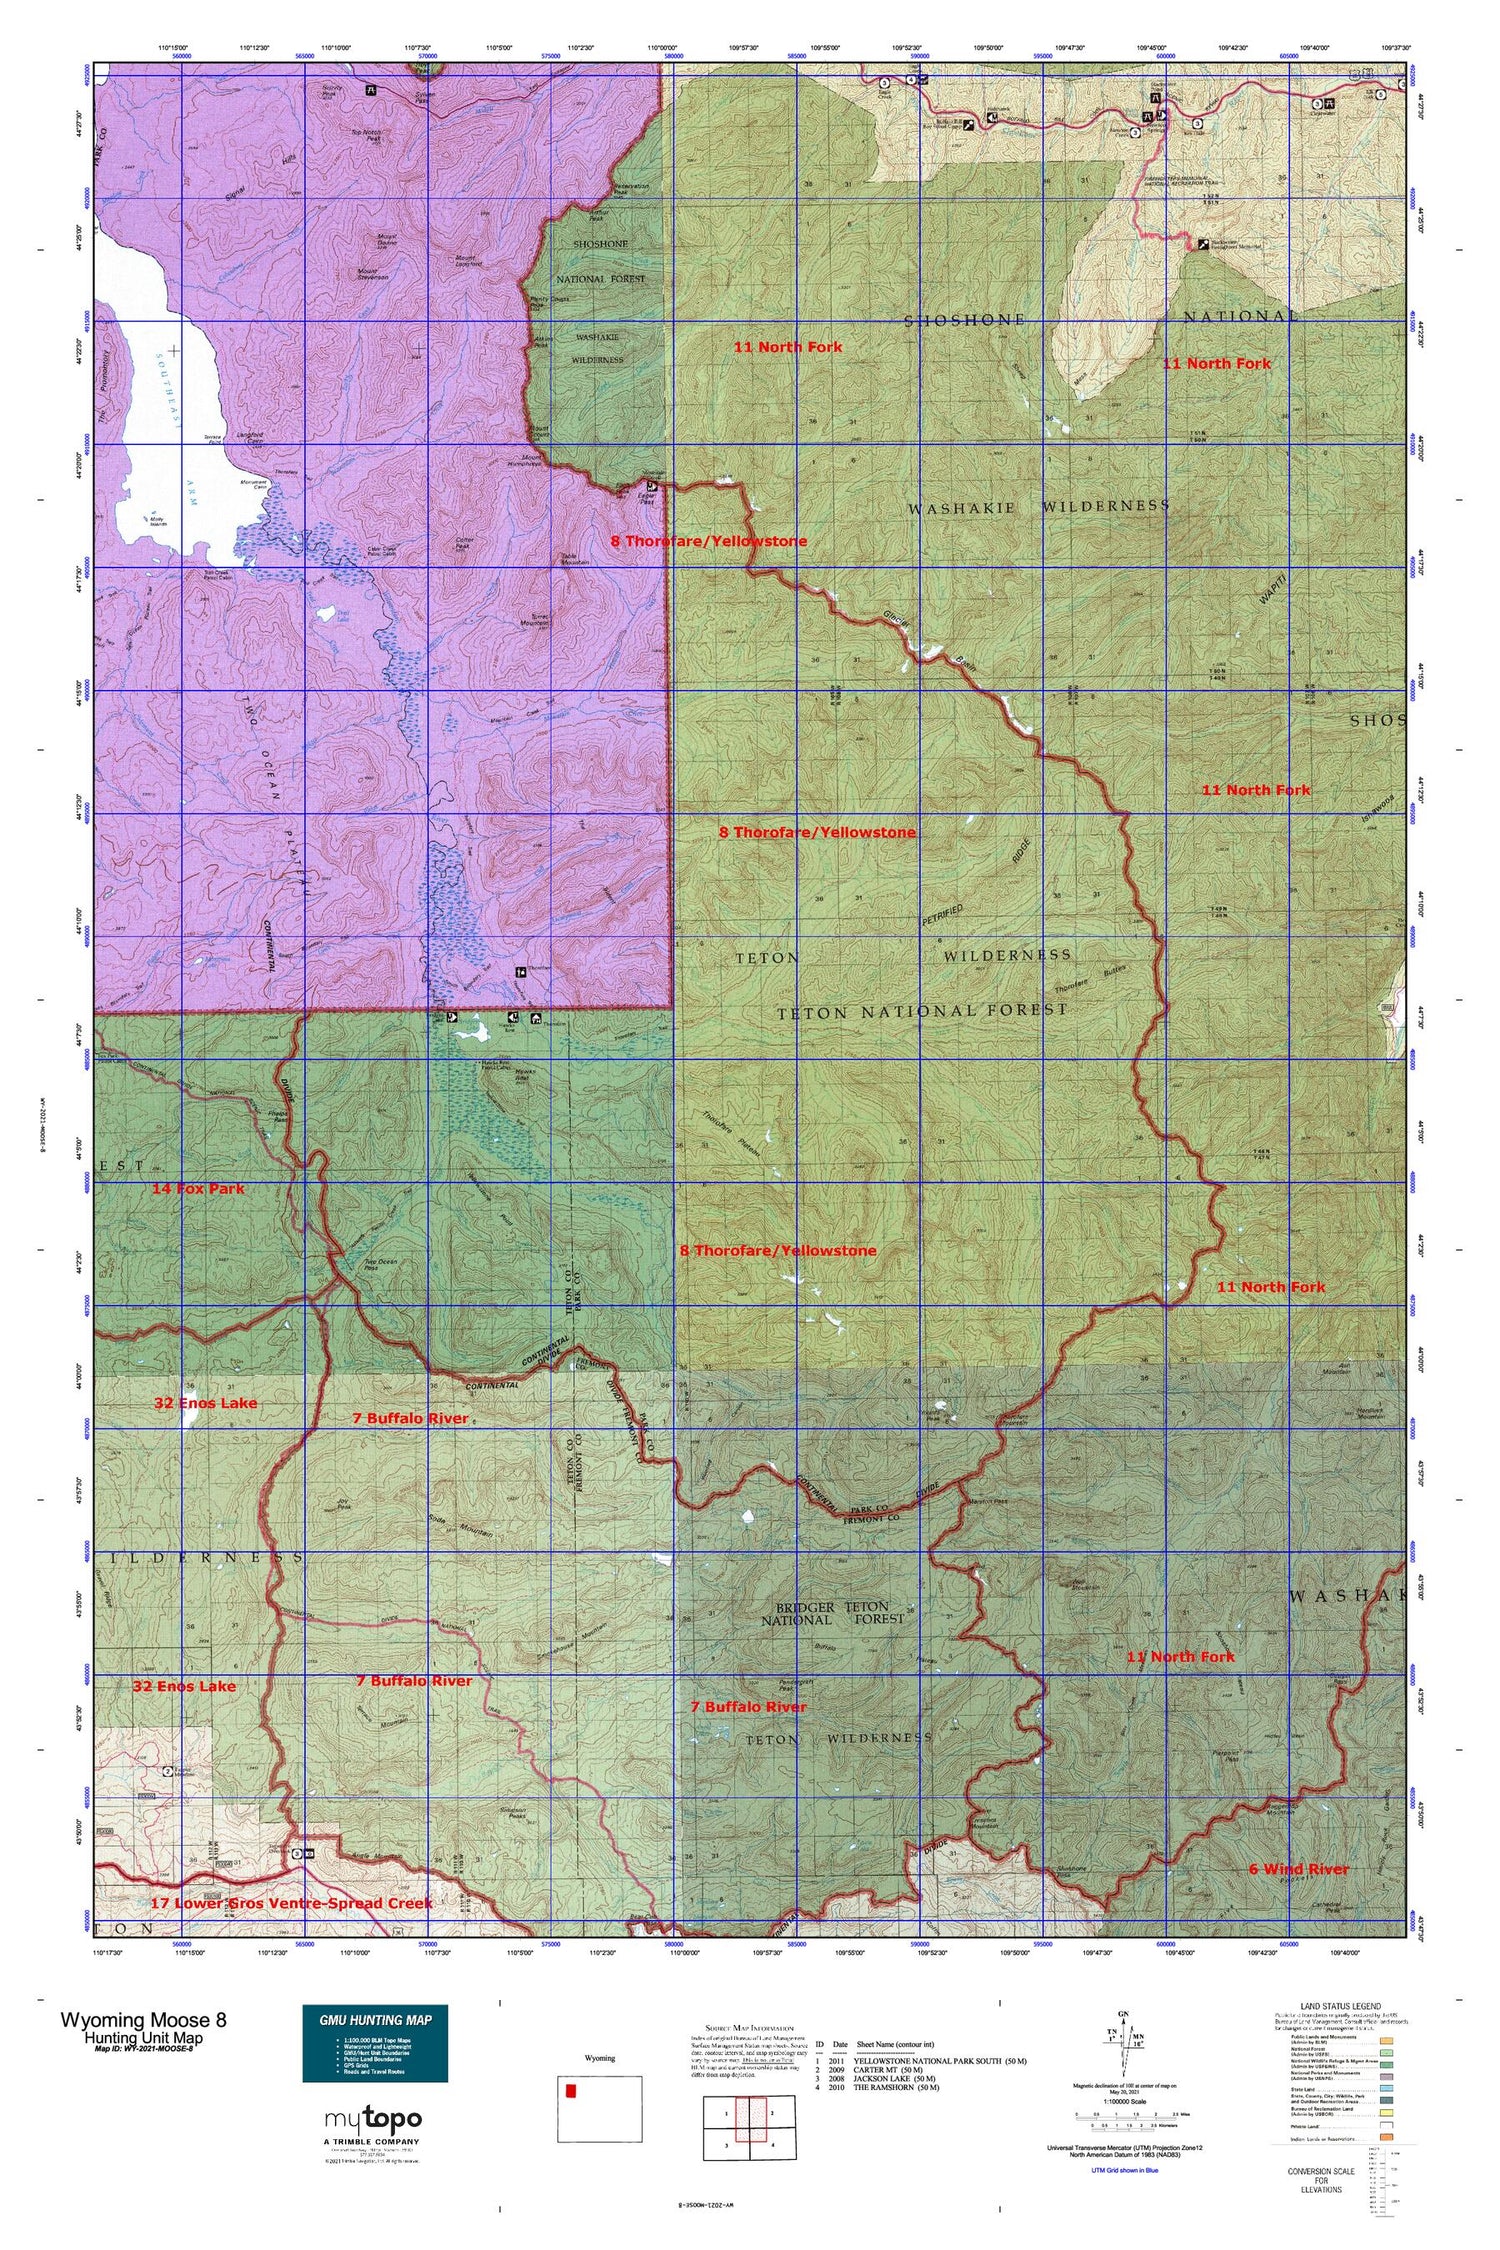 Wyoming Moose 8 Map Image